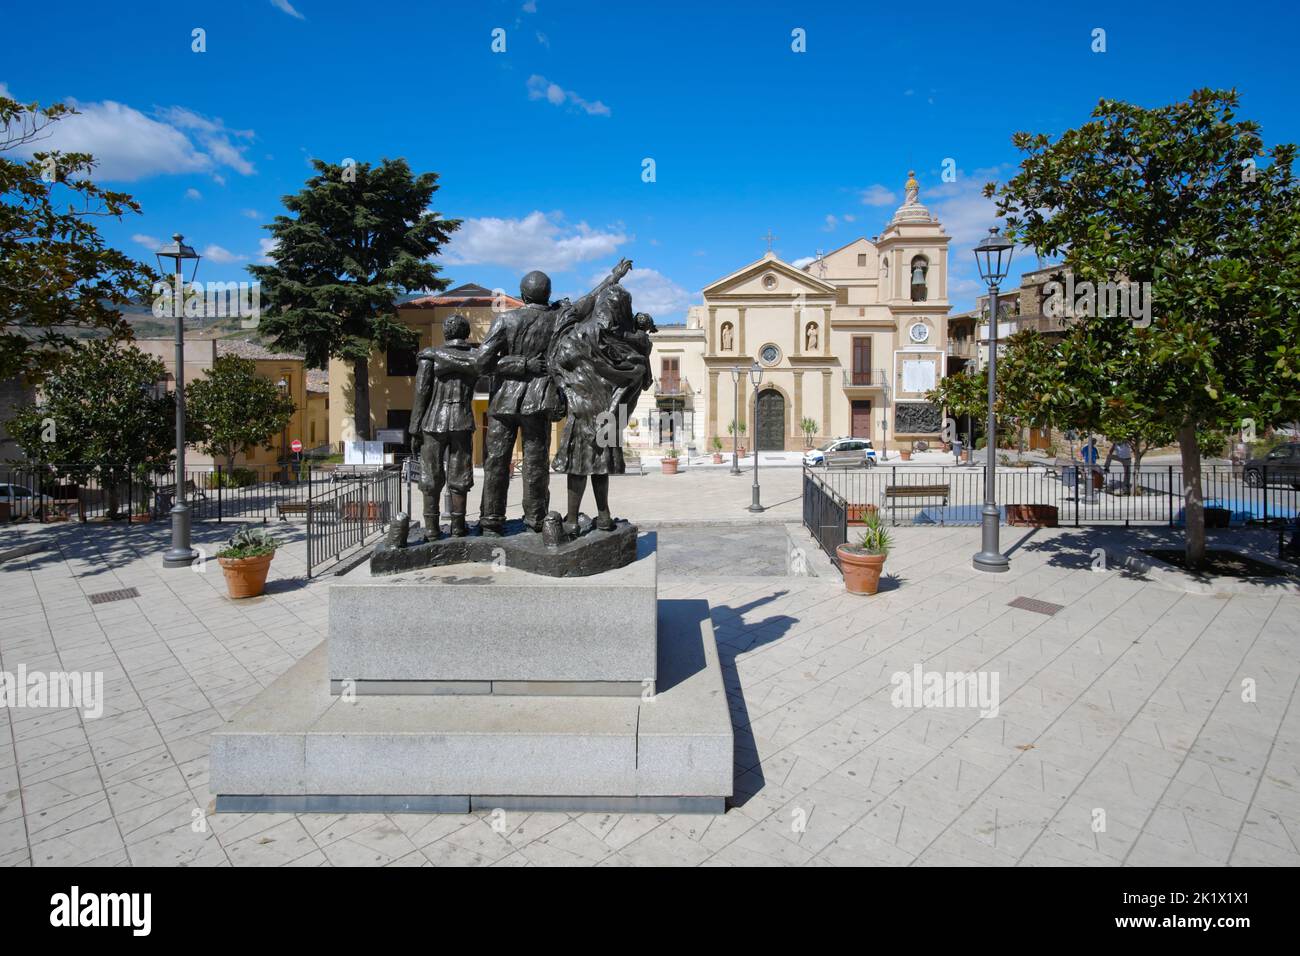 La plaza principal de Cefalà Diana con el monumento a los emigrantes y la iglesia de San Francesco di Paola en Sicilia, Italia Foto de stock